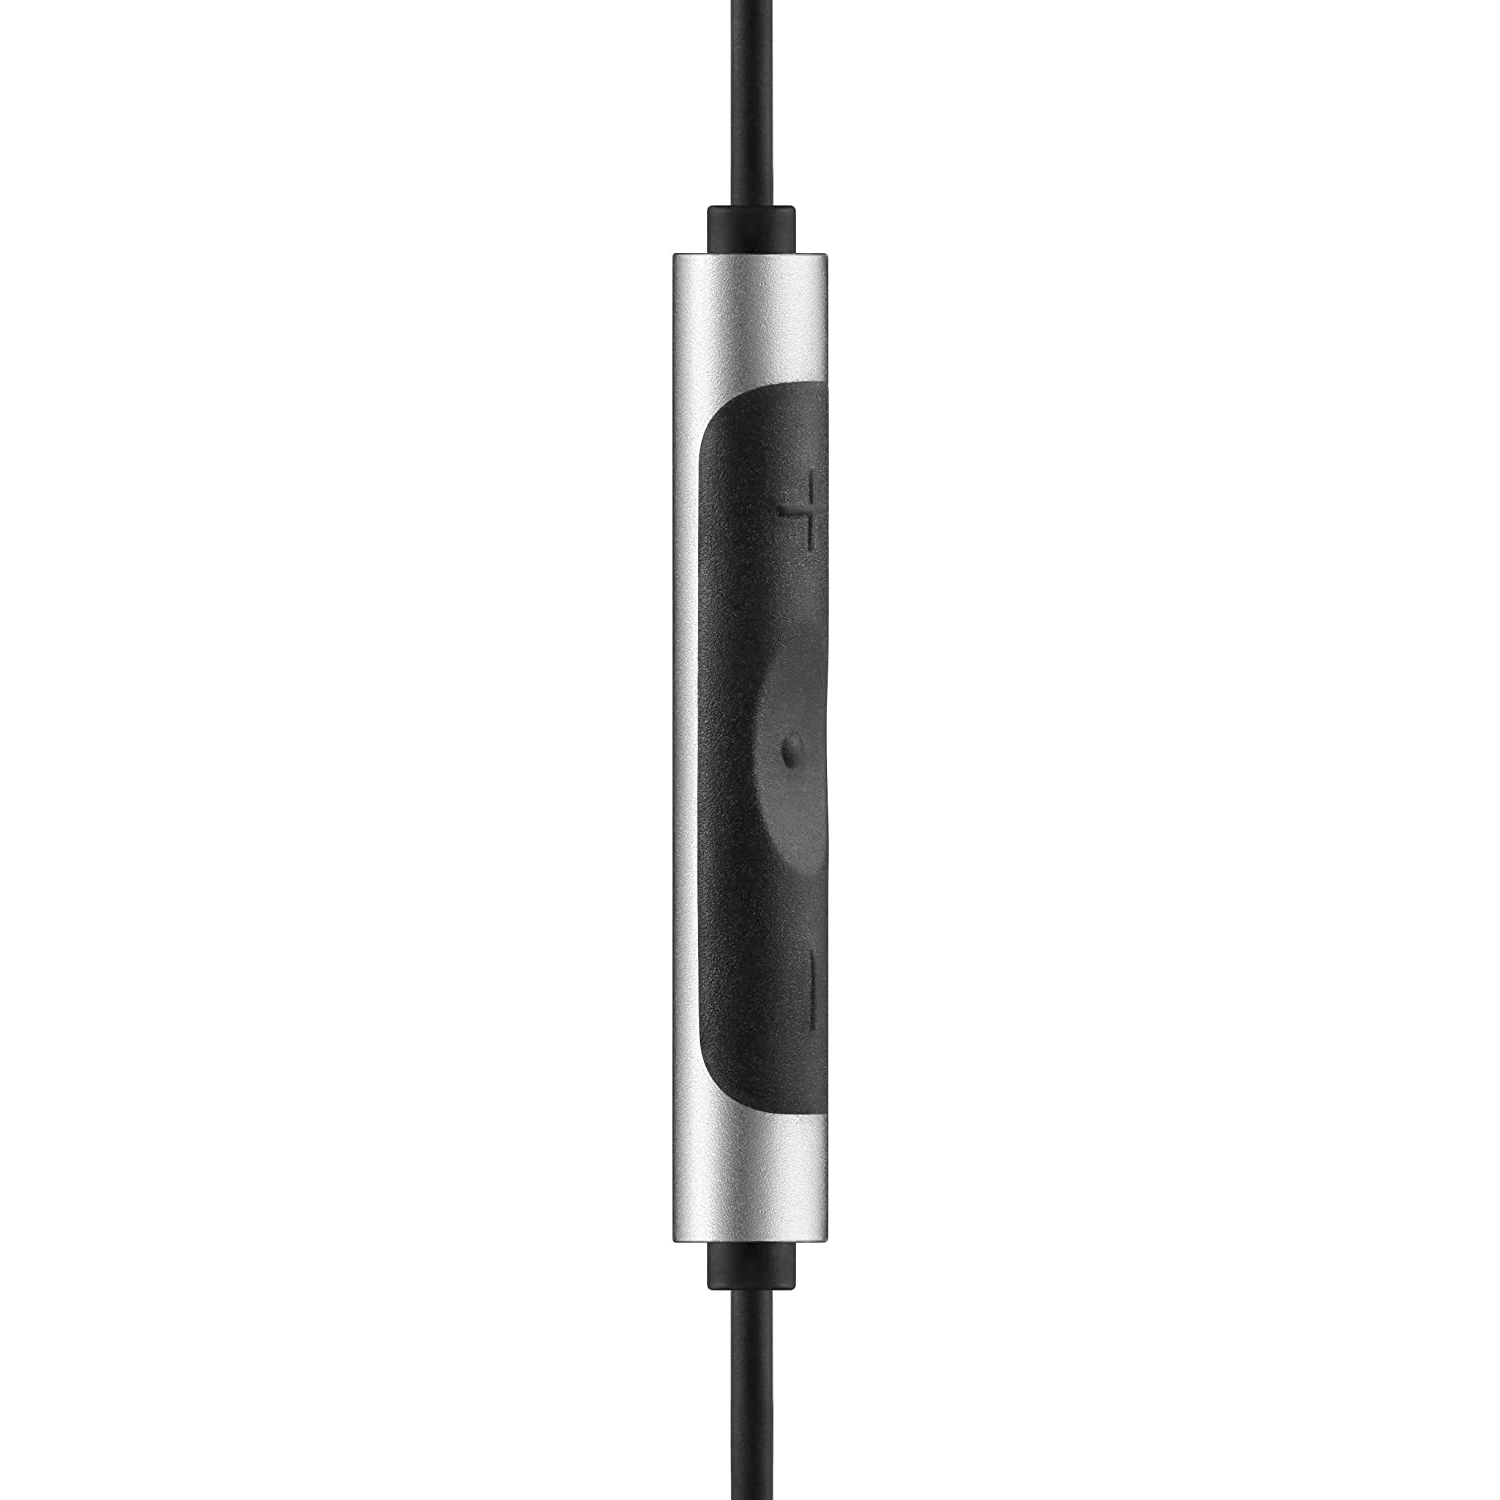 RHA MA390 Wireless in-Ear Headphone: Bluetooth Sweatproof Noise Isolating Earphones